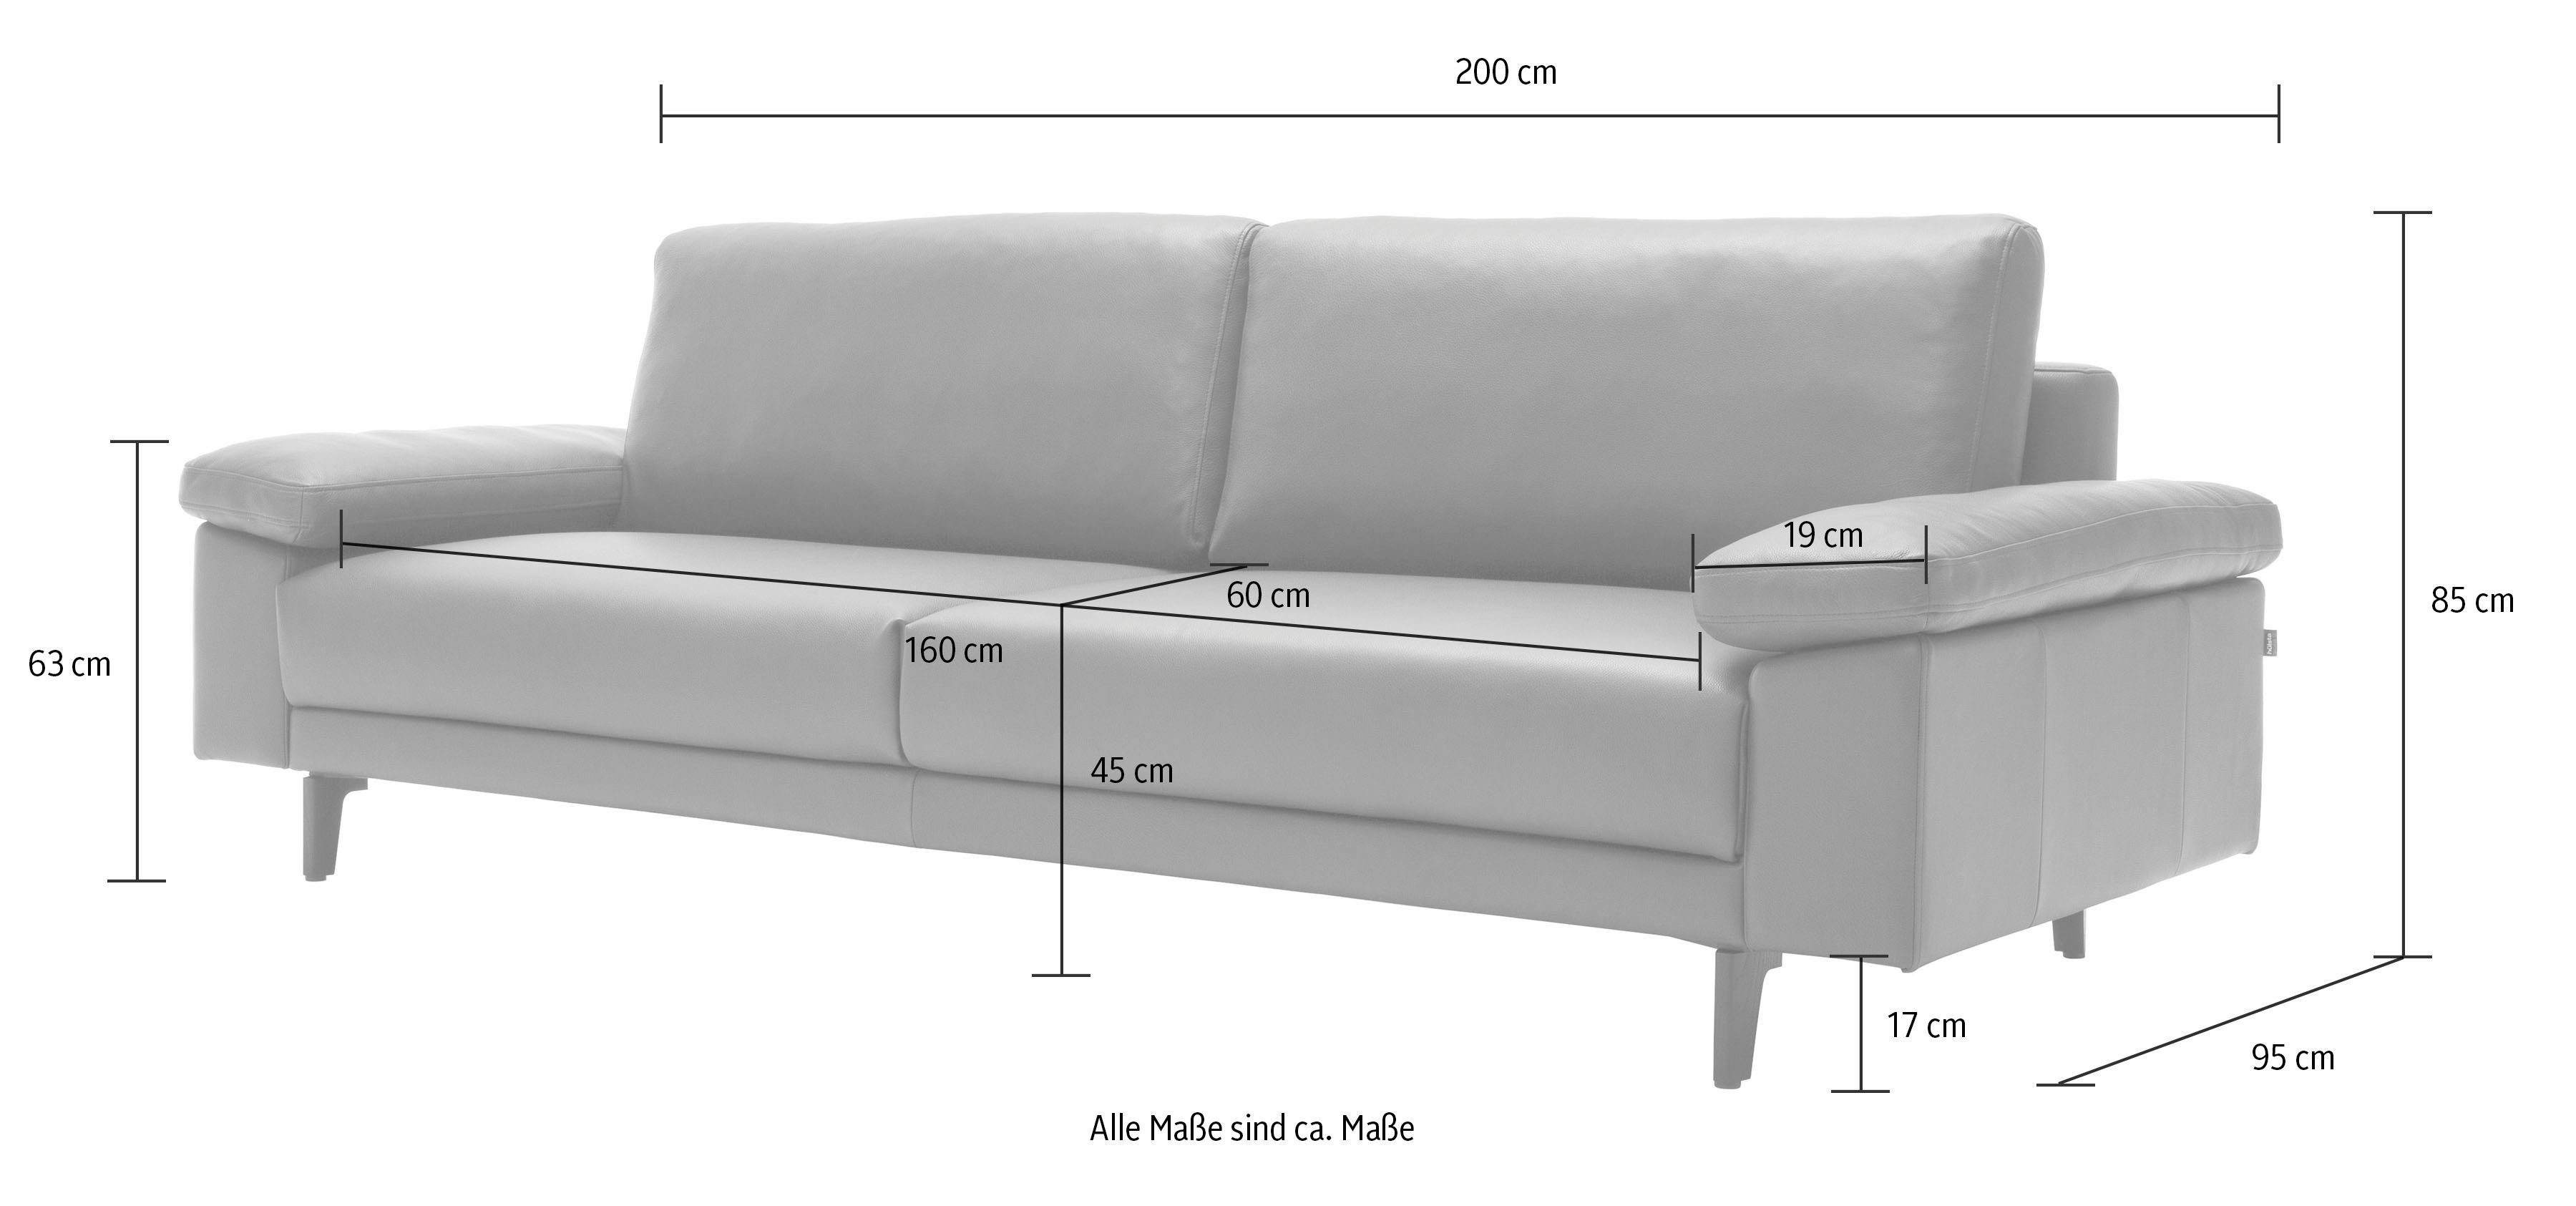 2,5-Sitzer hs.450 sofa hülsta